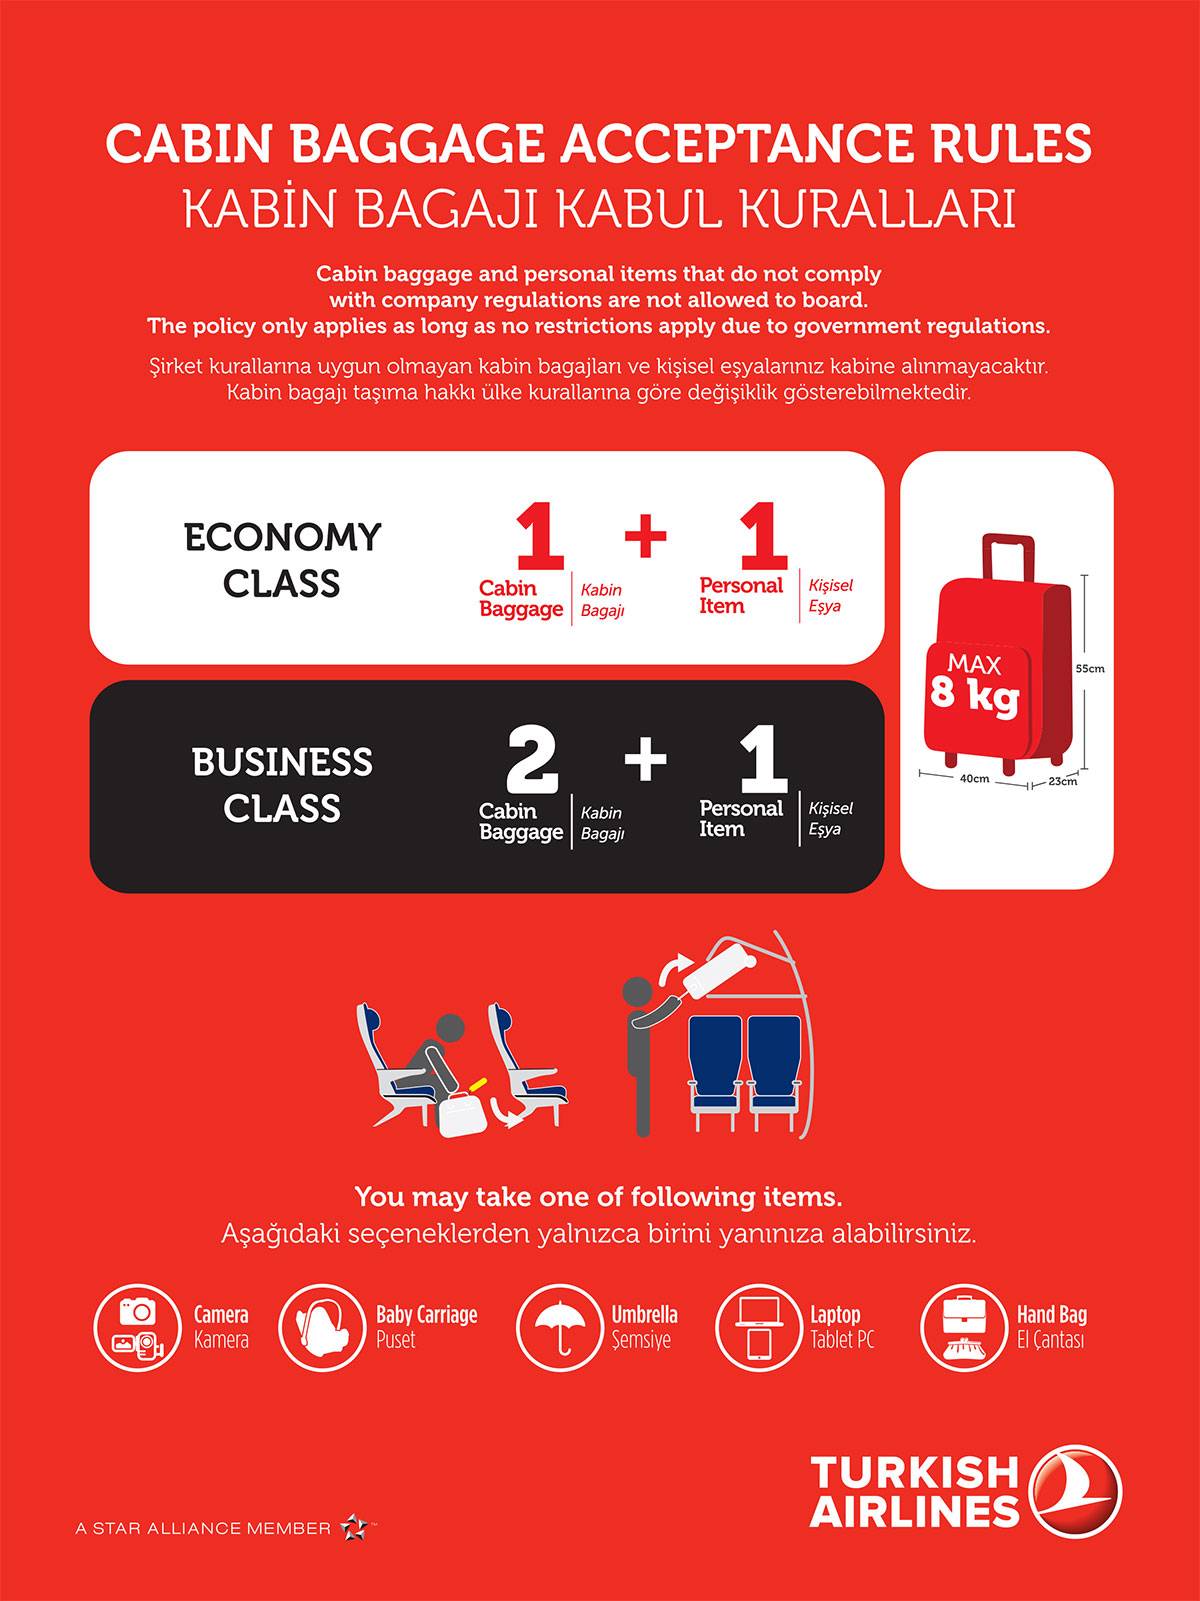 Turkish airlines - авиакомпания турецкие авиалинии, нормы провоза багажа и ручной клади - 2021 - страница 69